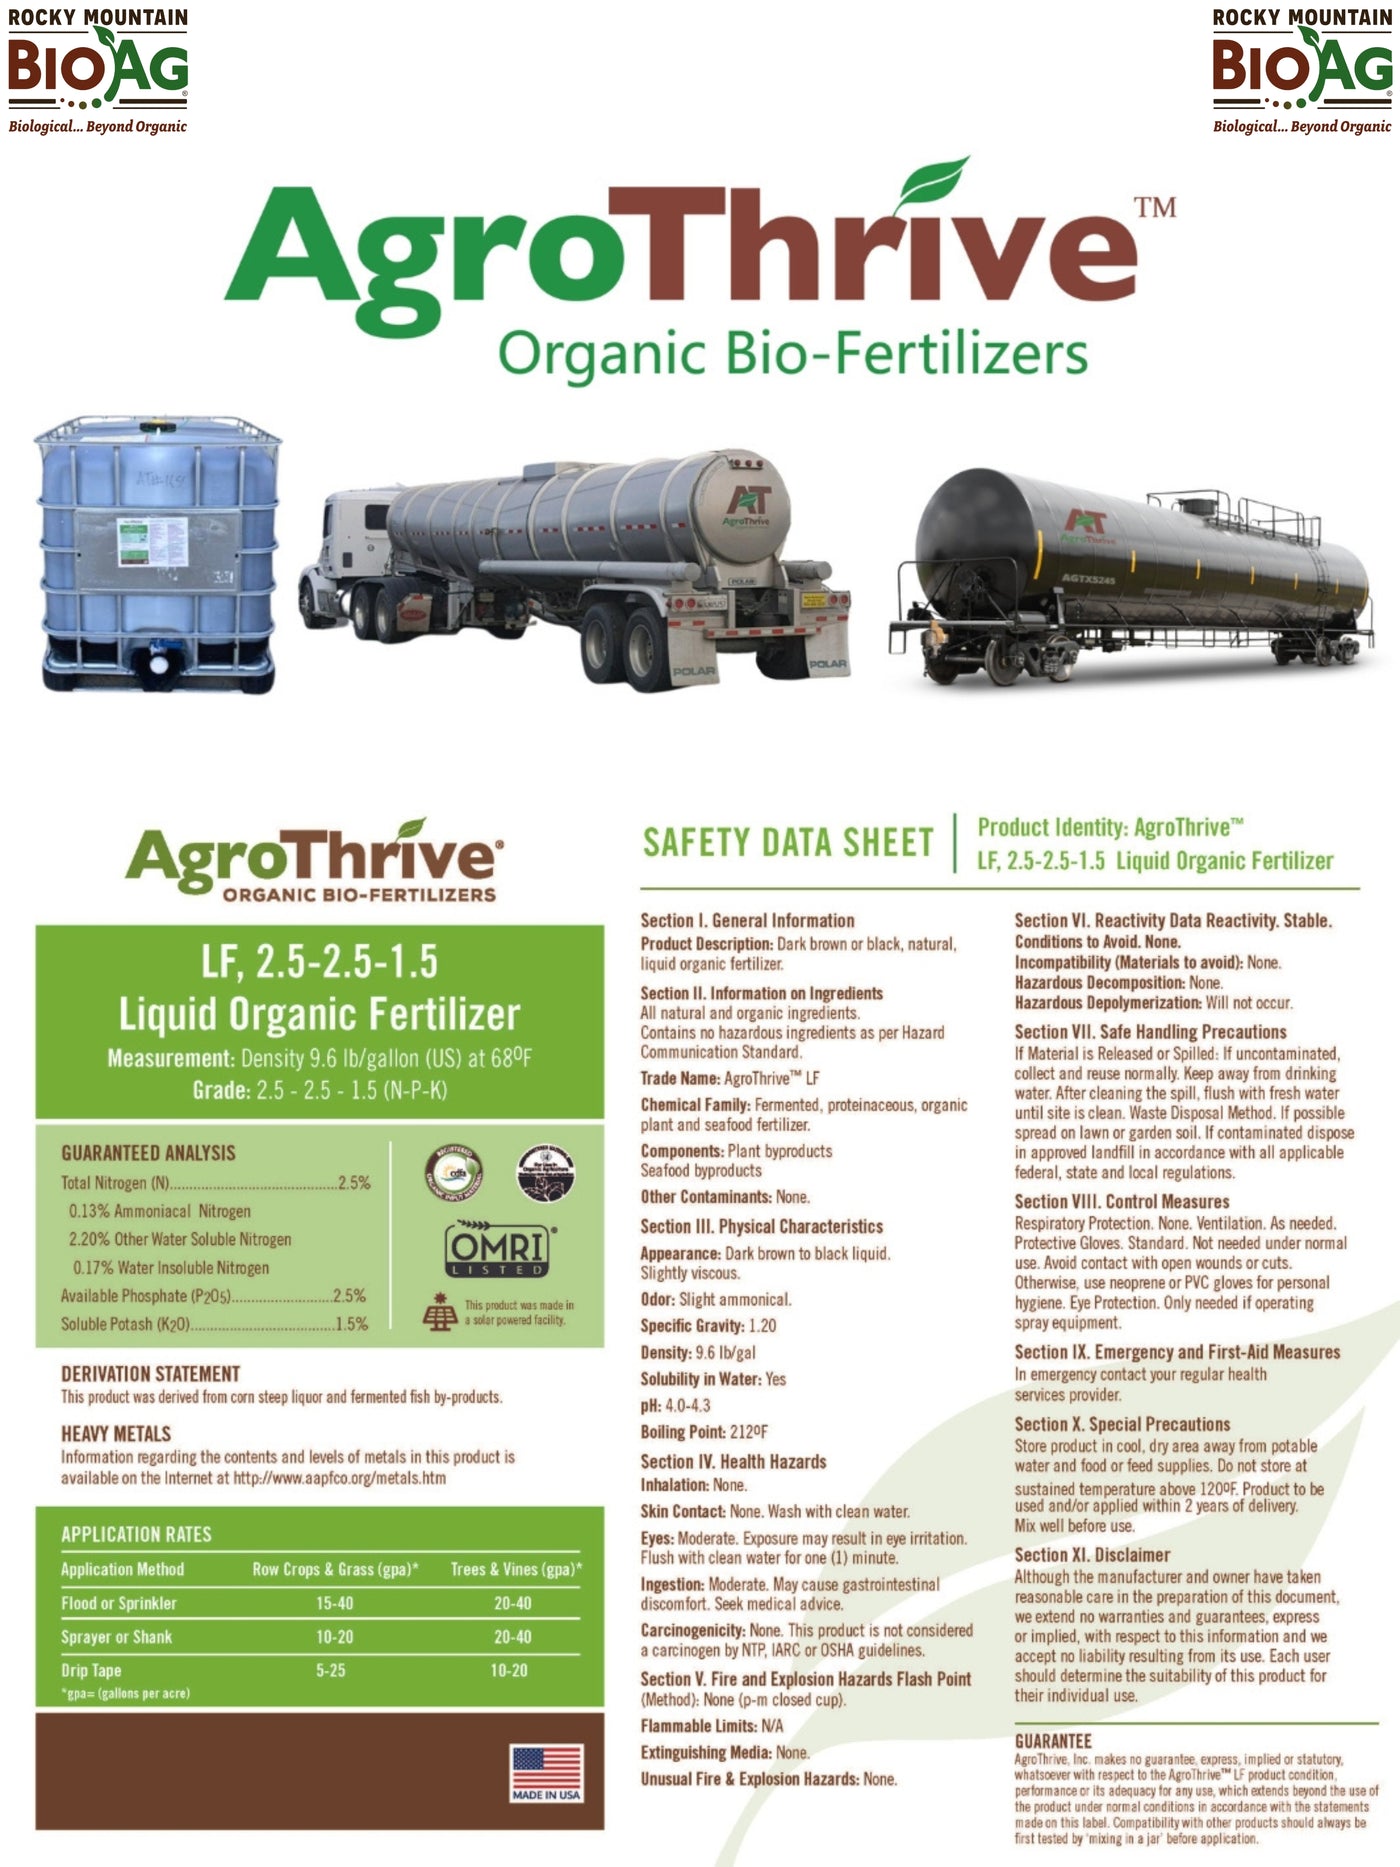 AgroThrive LF 2.5-2.5-1.5 Liquid Organic Fertilizer